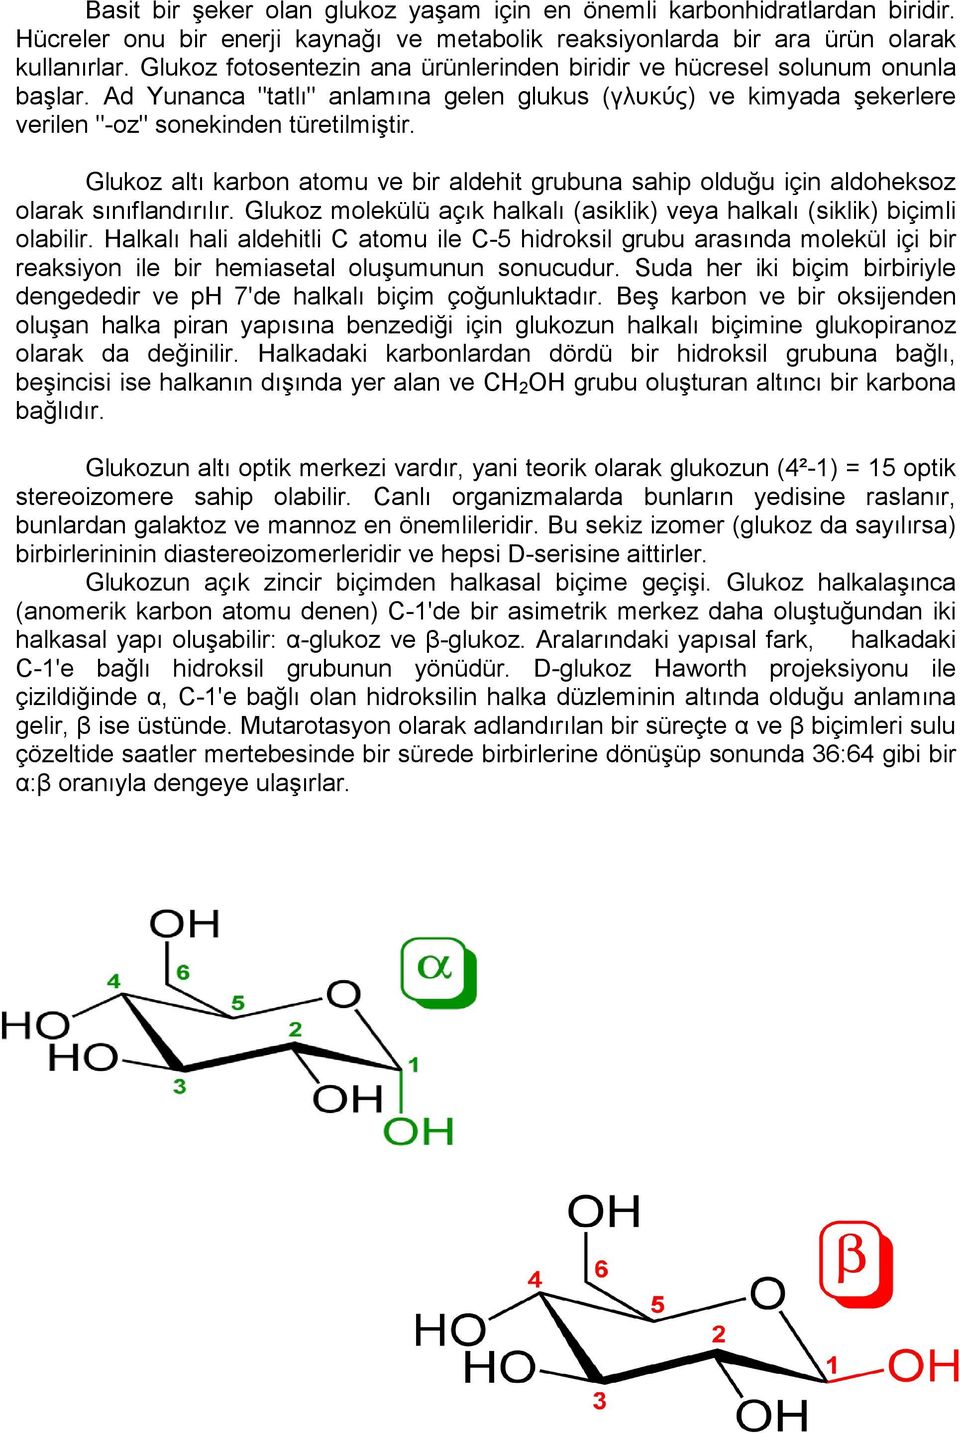 Glukoz altı karbon atomu ve bir aldehit grubuna sahip olduğu için aldoheksoz olarak sınıflandırılır. Glukoz molekülü açık halkalı (asiklik) veya halkalı (siklik) biçimli olabilir.